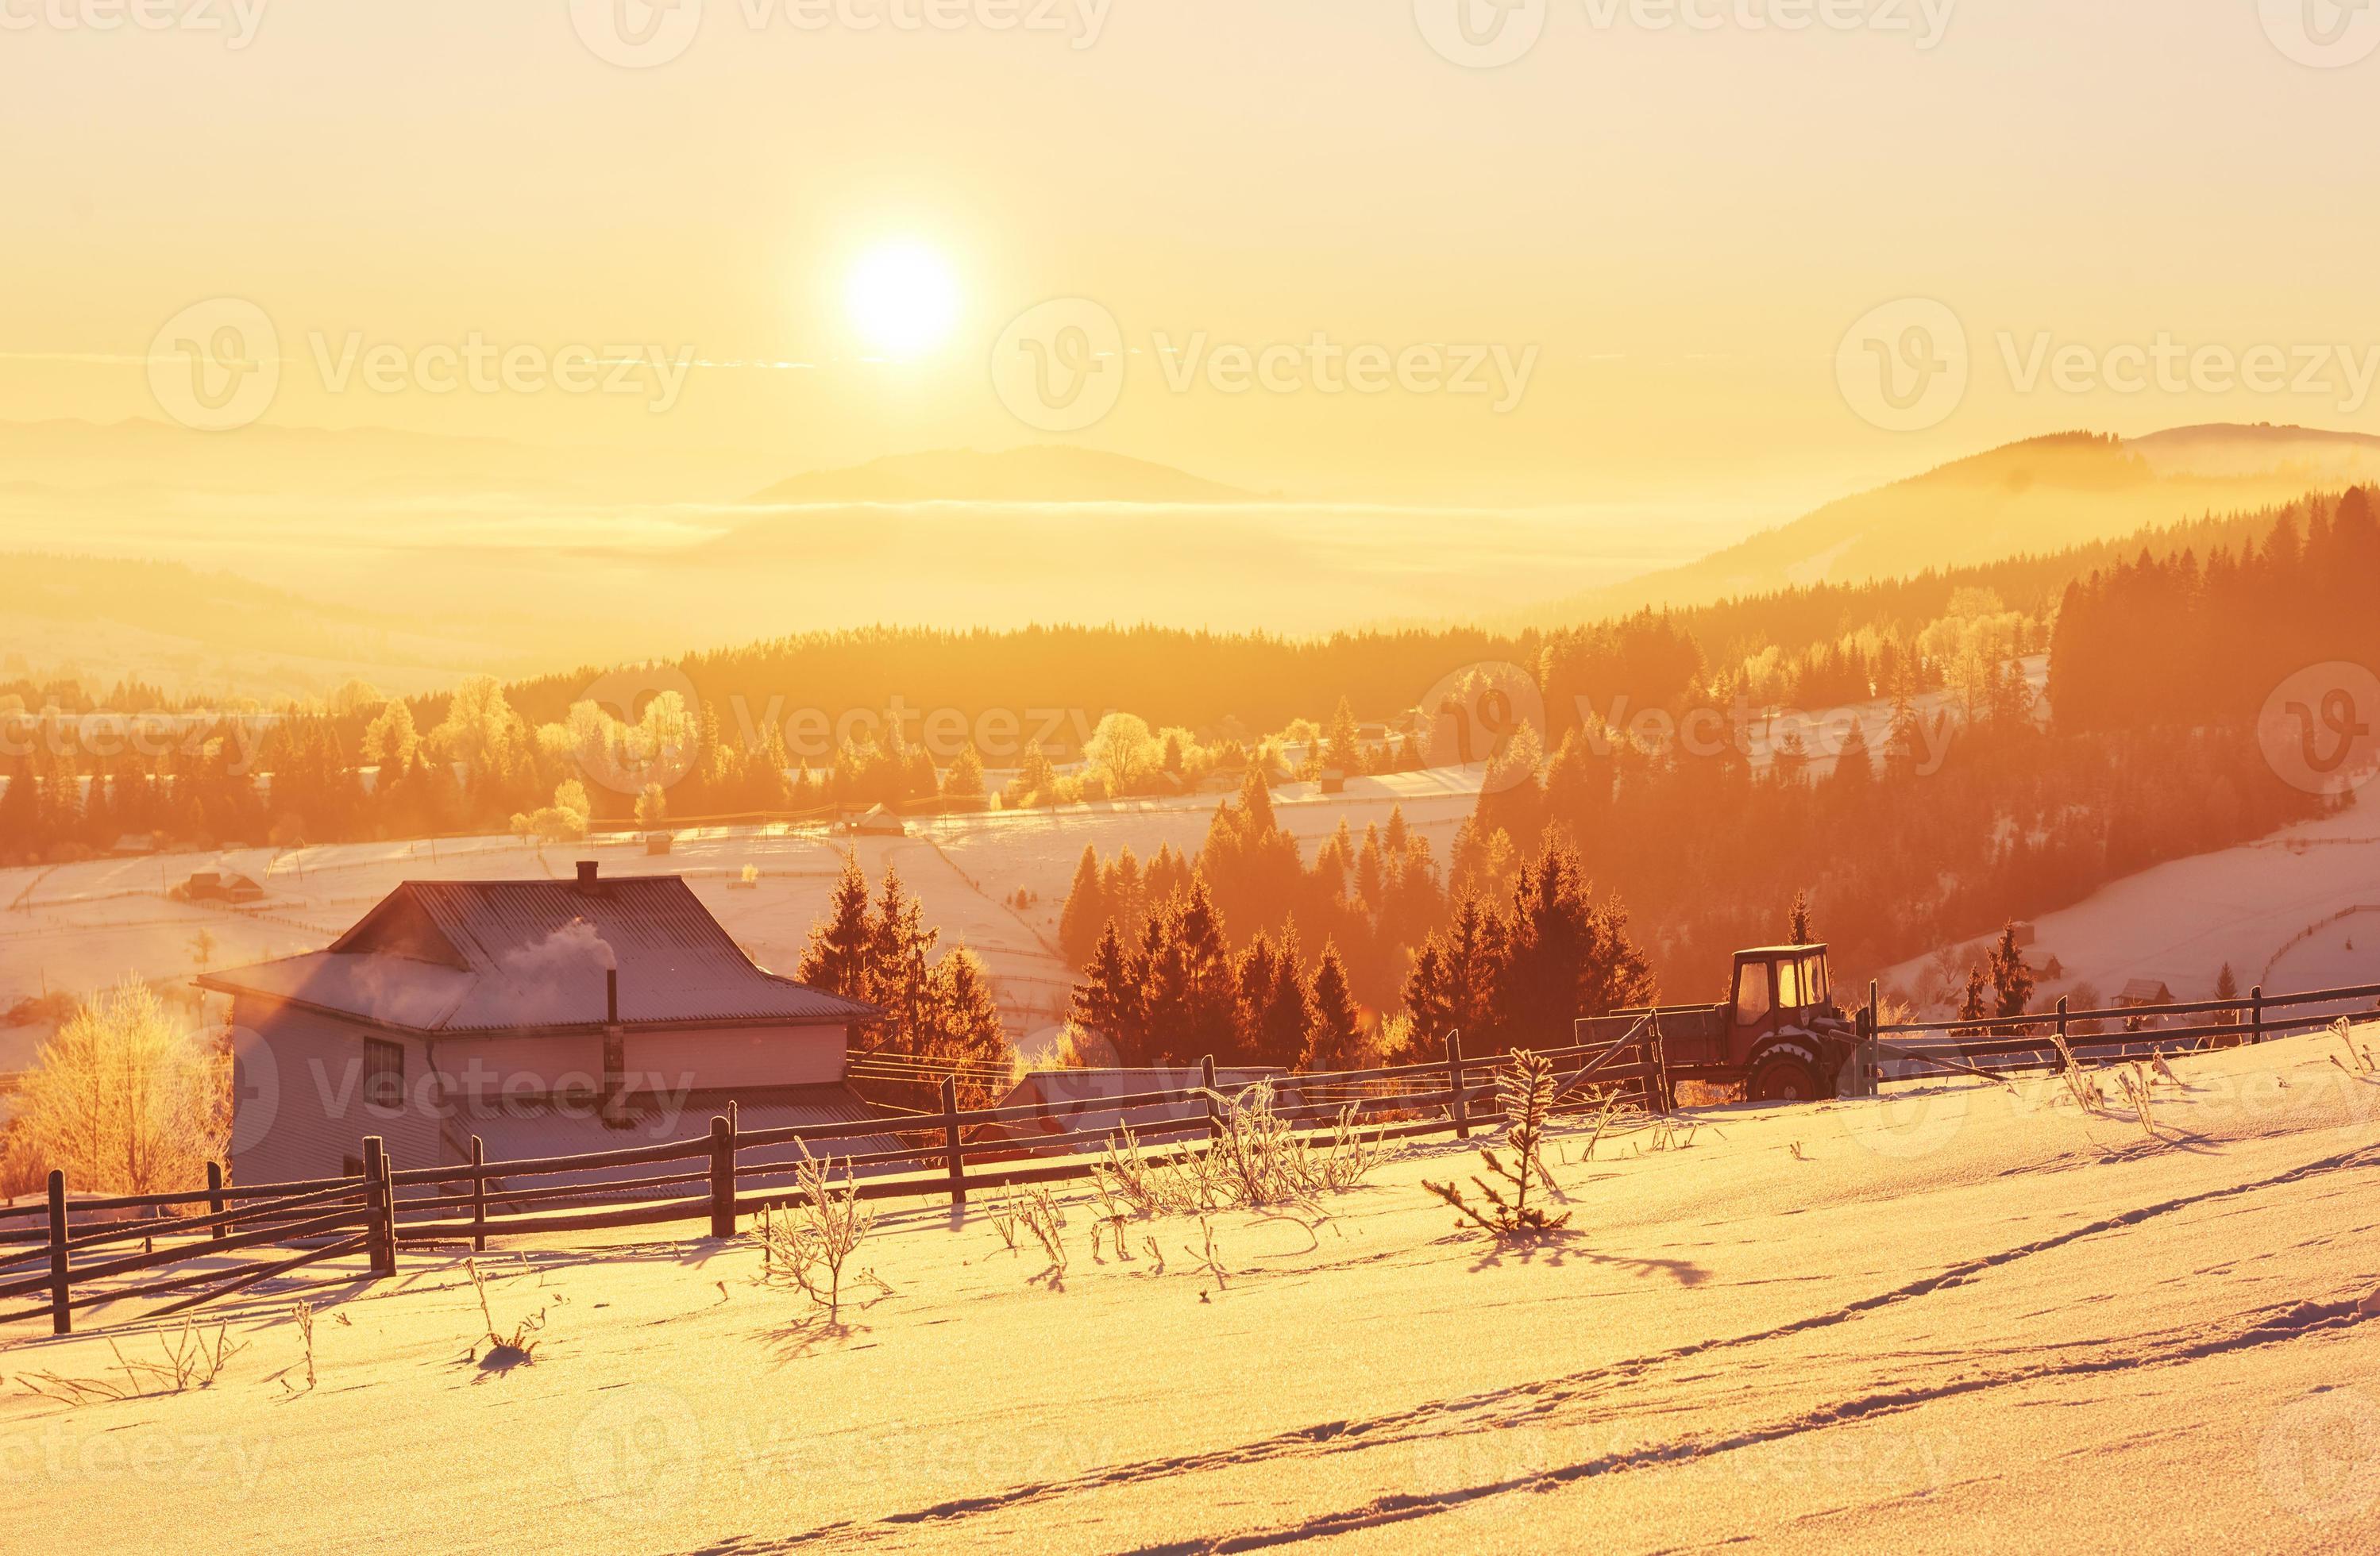 il misterioso paesaggio invernale è costituito da maestose montagne in inverno. tramonto fantastico. case di registrazione nella neve. cartolina di cortesia con foto. Carpazi foto